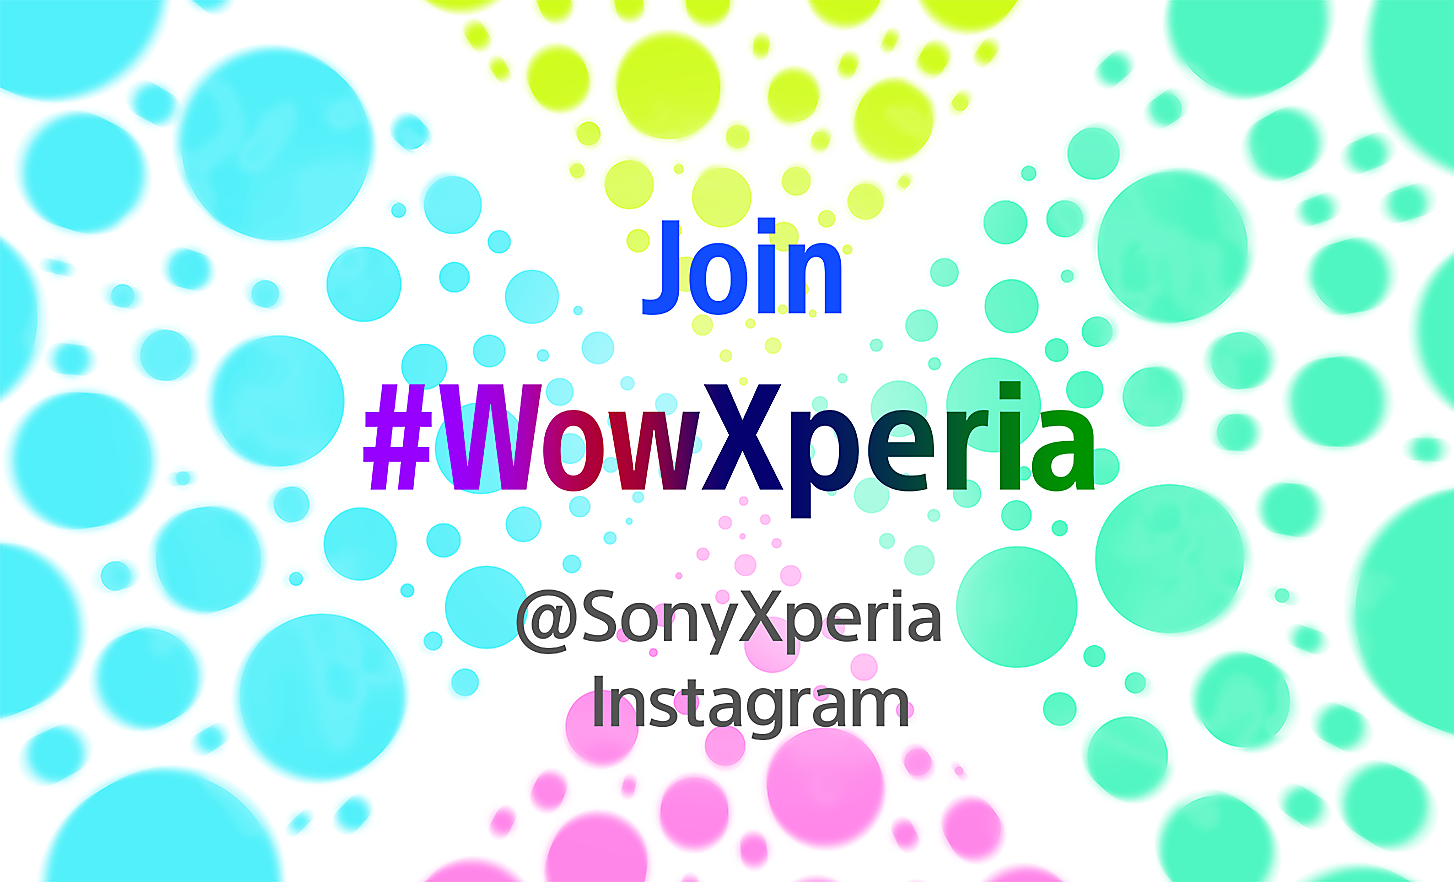 Imagen de coloridas burbujas y texto de etiquetas de redes sobre cómo unirse a Wow con Xperia en un fondo blanco